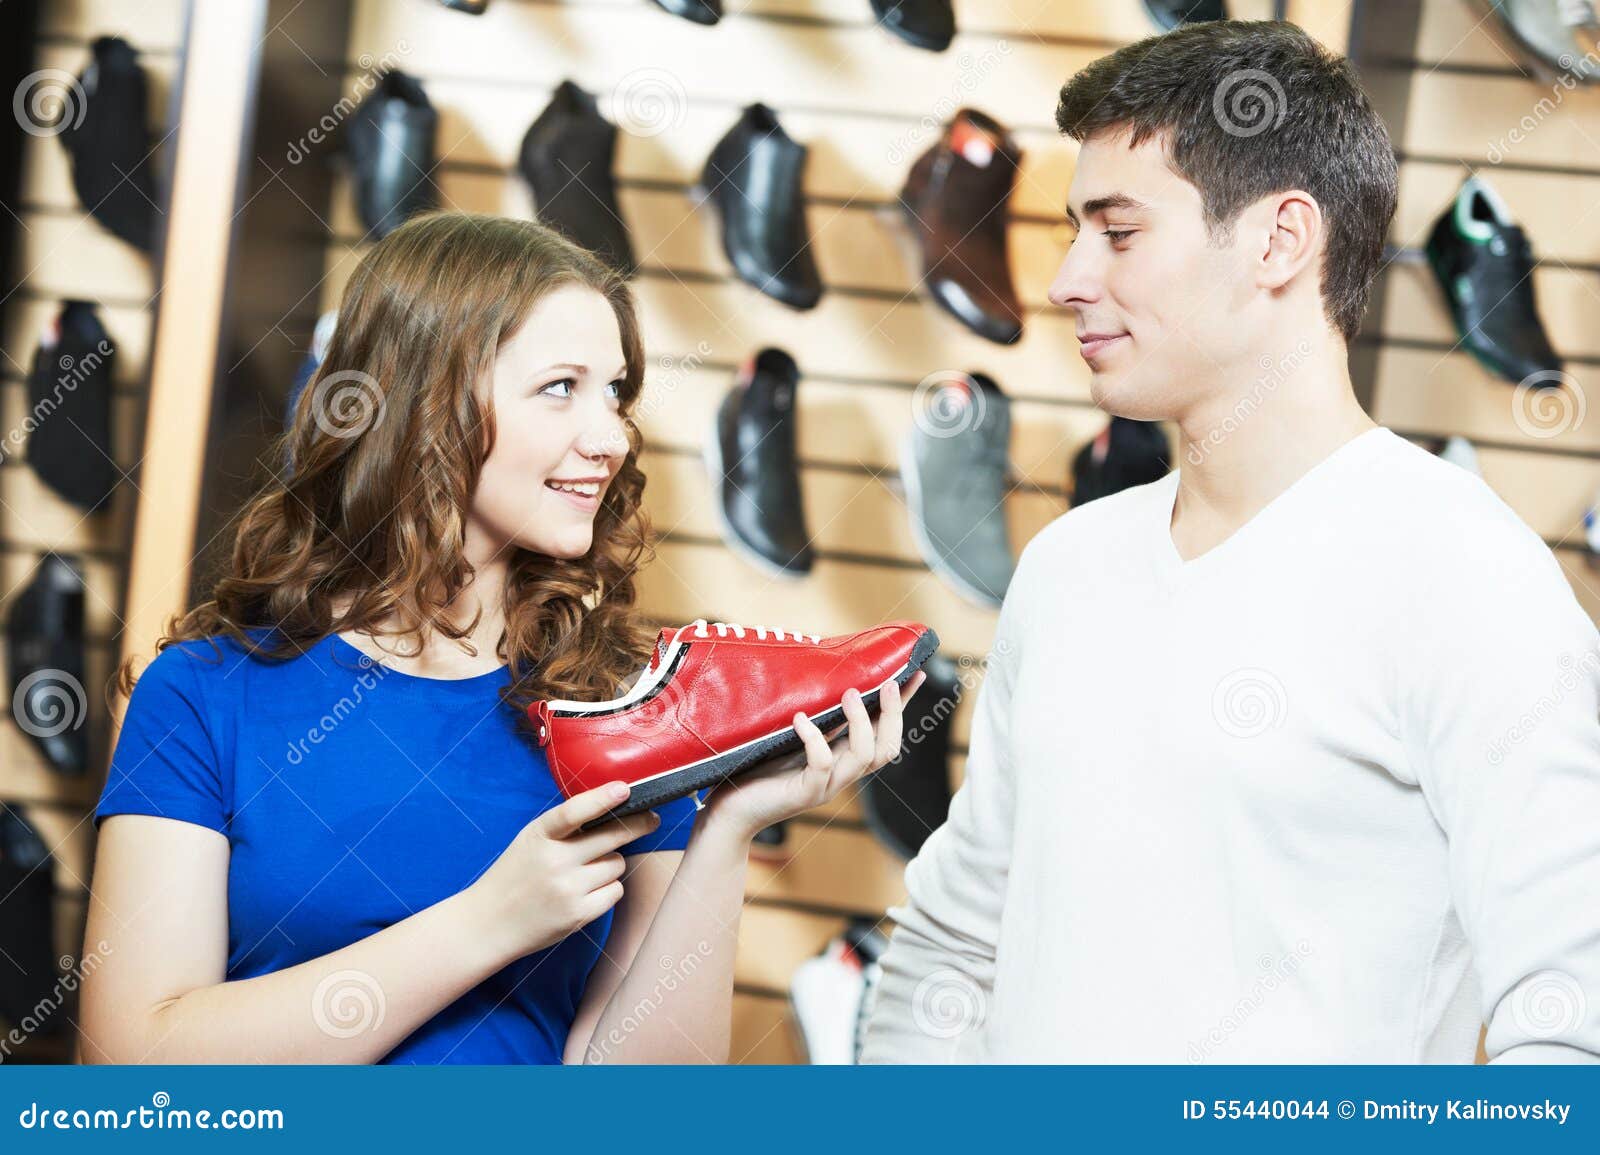 Магазин мужей видео. Продавец в магазине обуви. Покупатели в обувном магазине. Покупатель в магазине обуви. Обувной для мужчин.